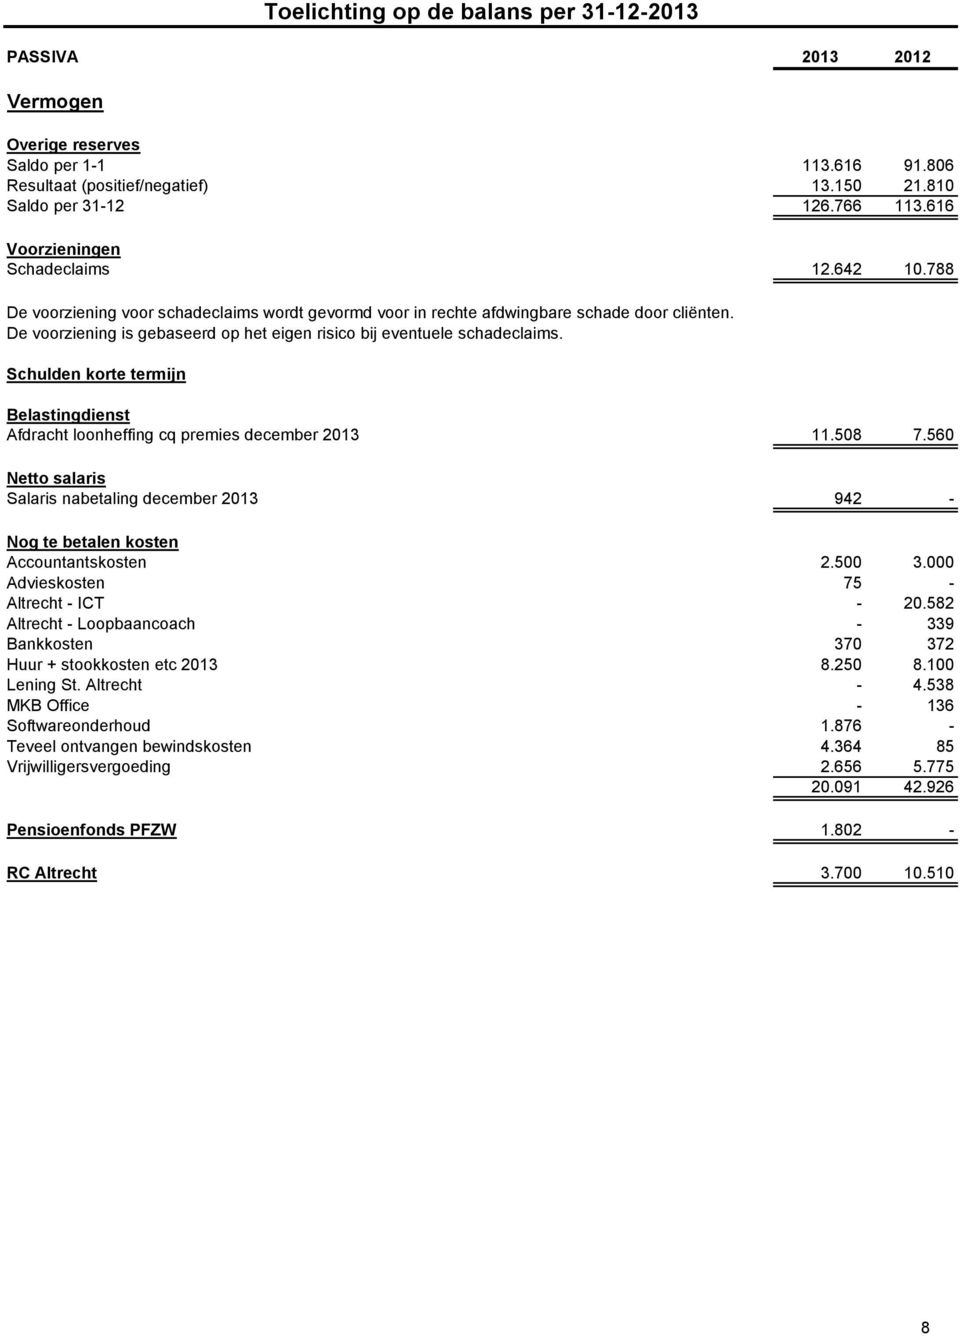 Schulden korte termijn Toelichting op de balans per 31-12-2013 Belastingdienst Afdracht loonheffing cq premies december 2013 11.508 7.